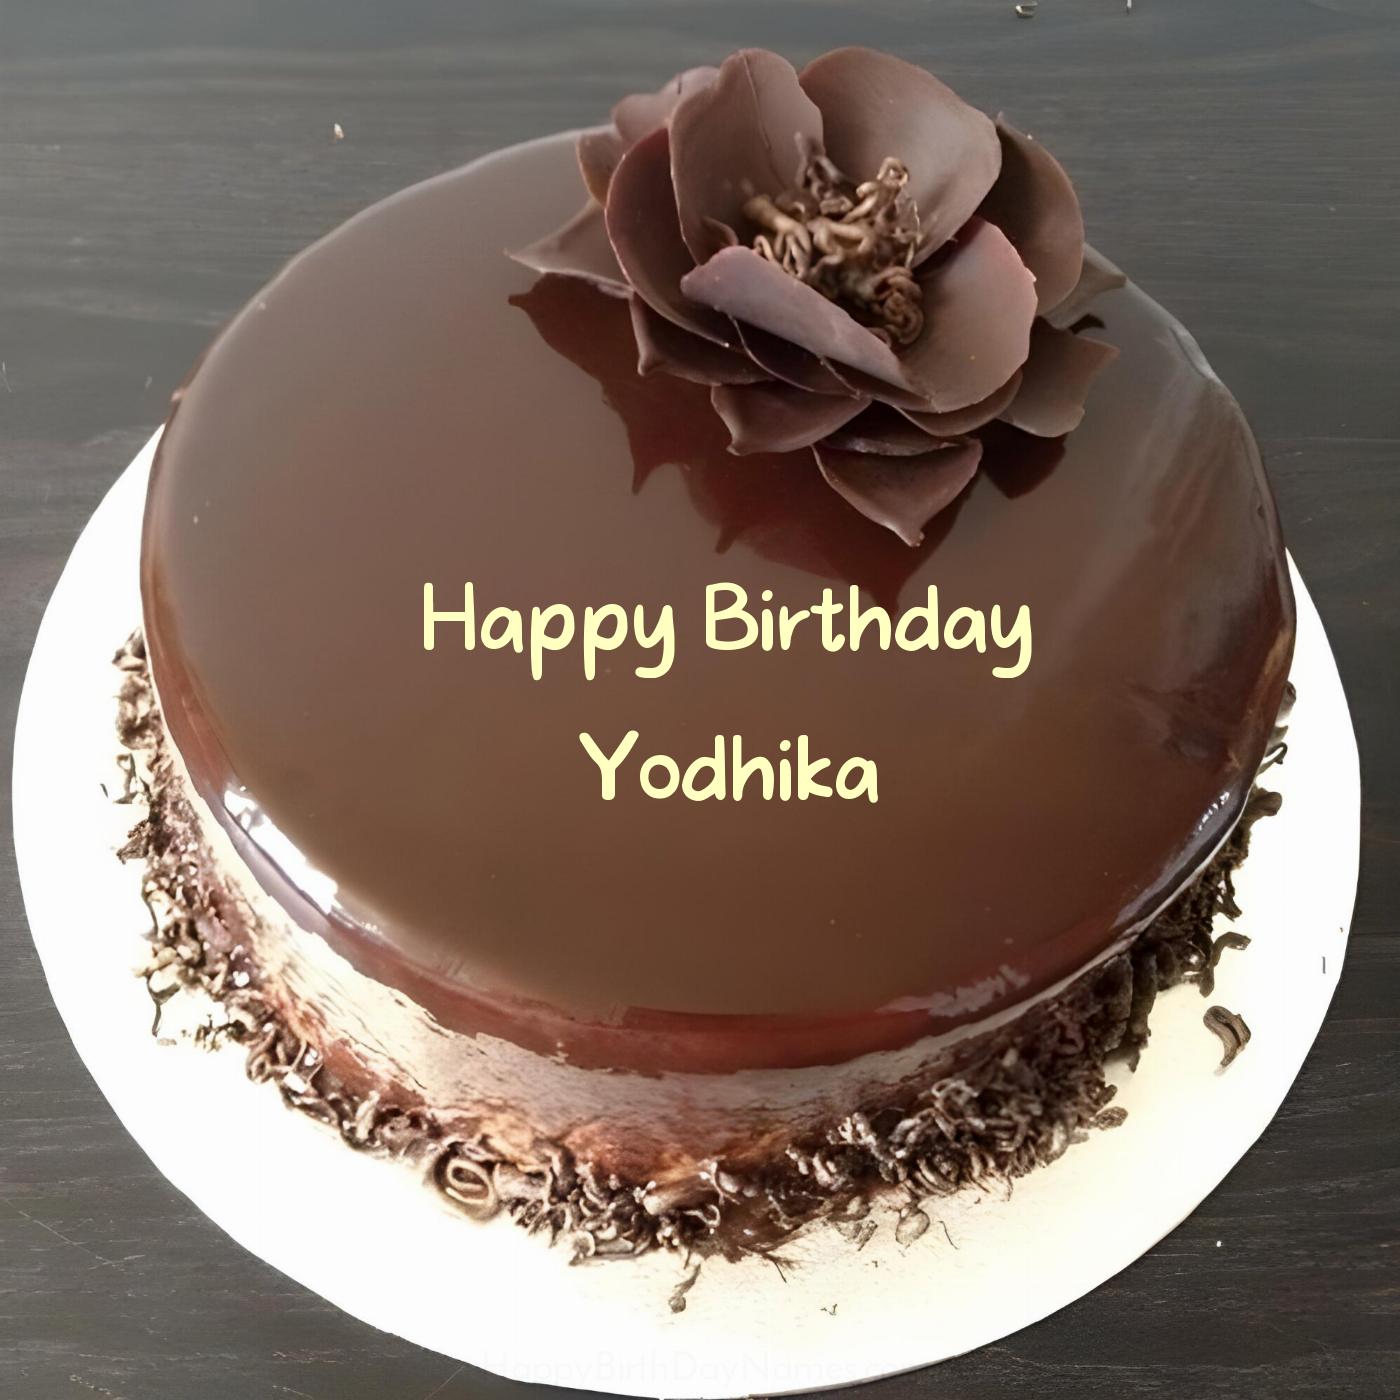 Happy Birthday Yodhika Chocolate Flower Cake